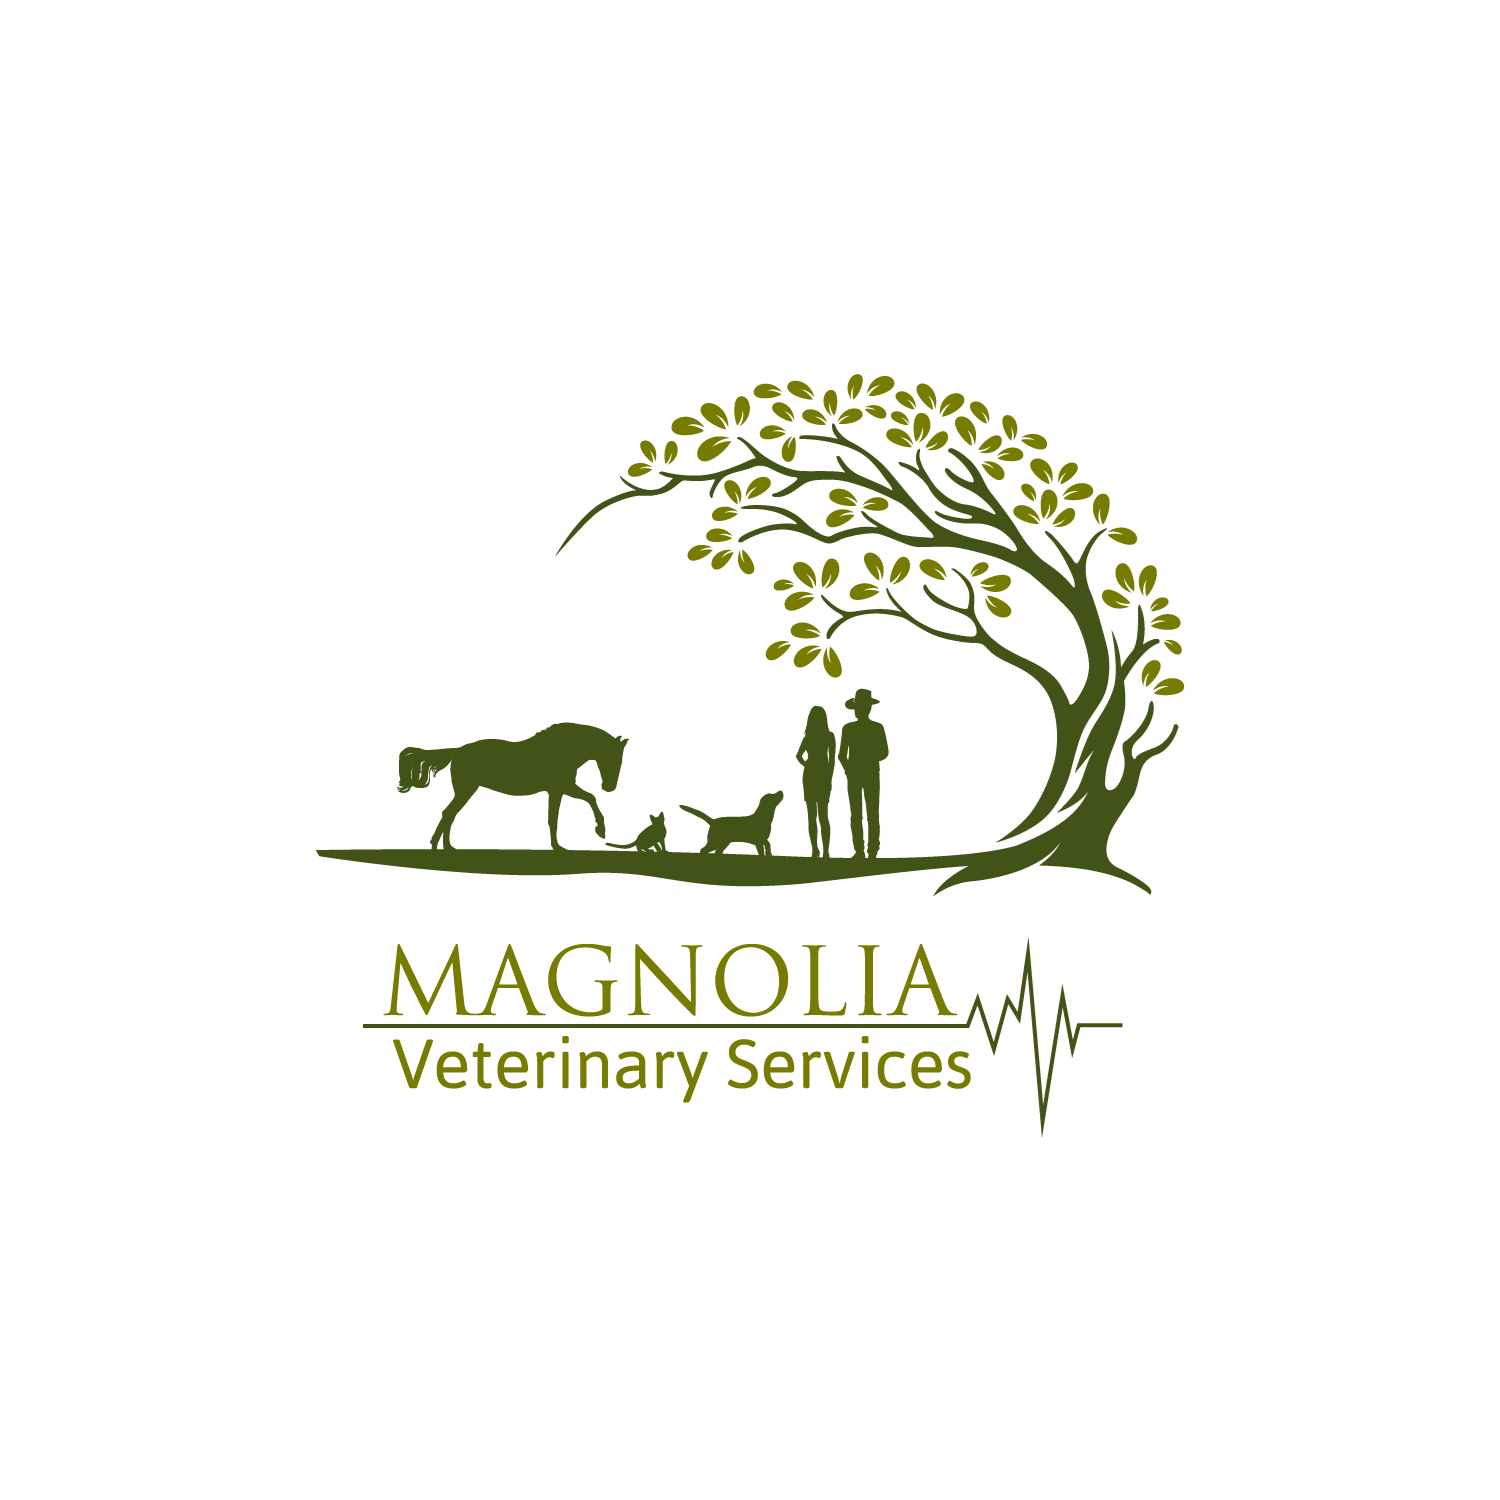 Magnolia Veterinary Services